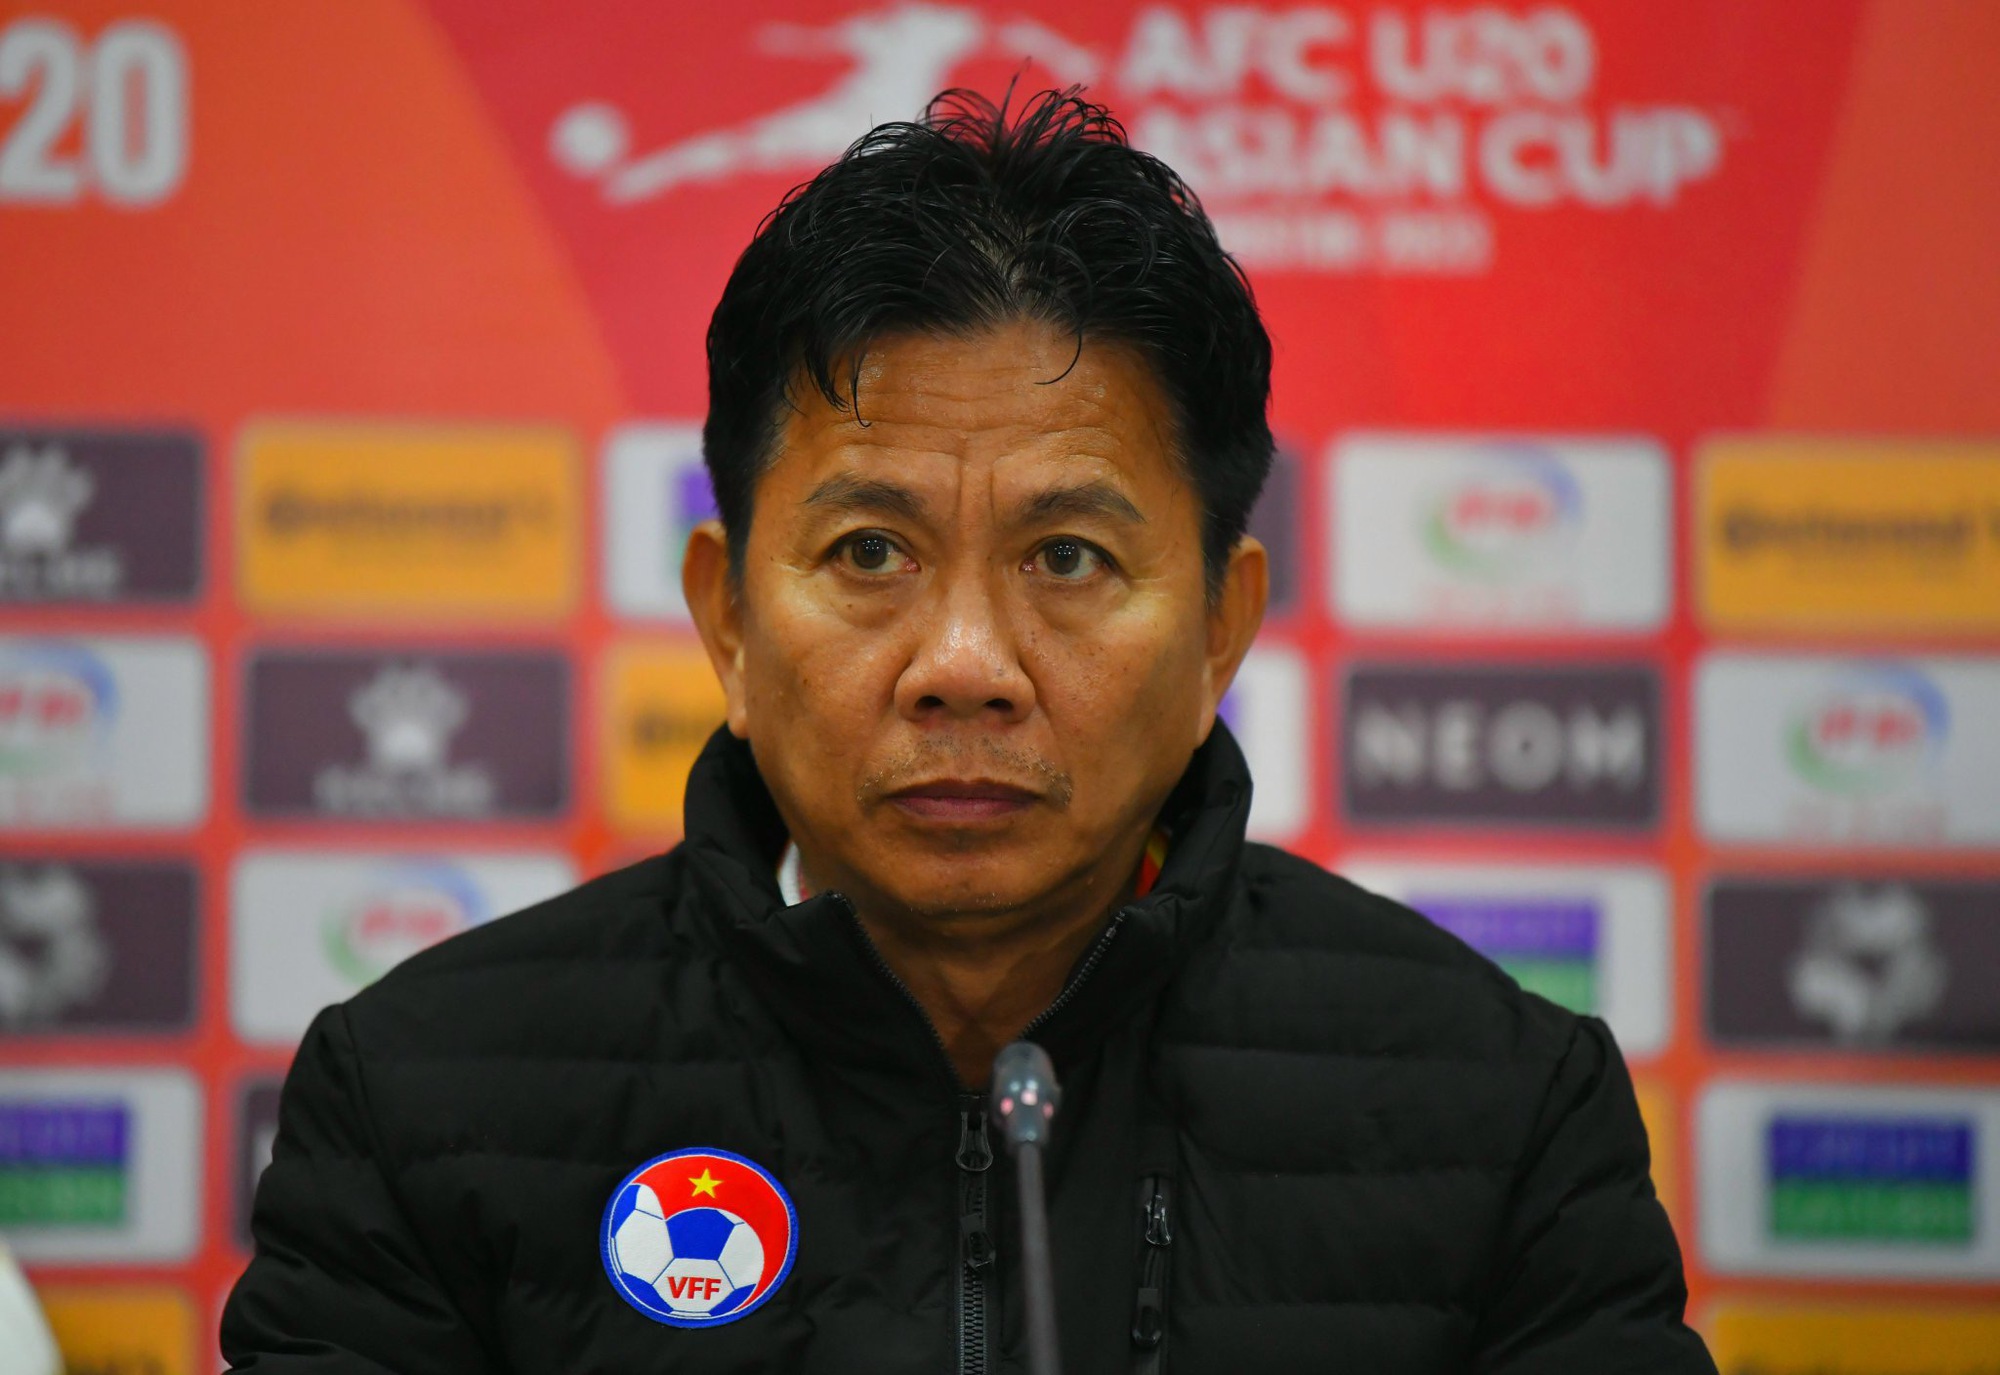 HLV Hoàng Anh Tuấn: 'U20 Việt Nam giành 6 điểm sau 2 trận nhưng chưa chắc đã đi tiếp' - Ảnh 1.